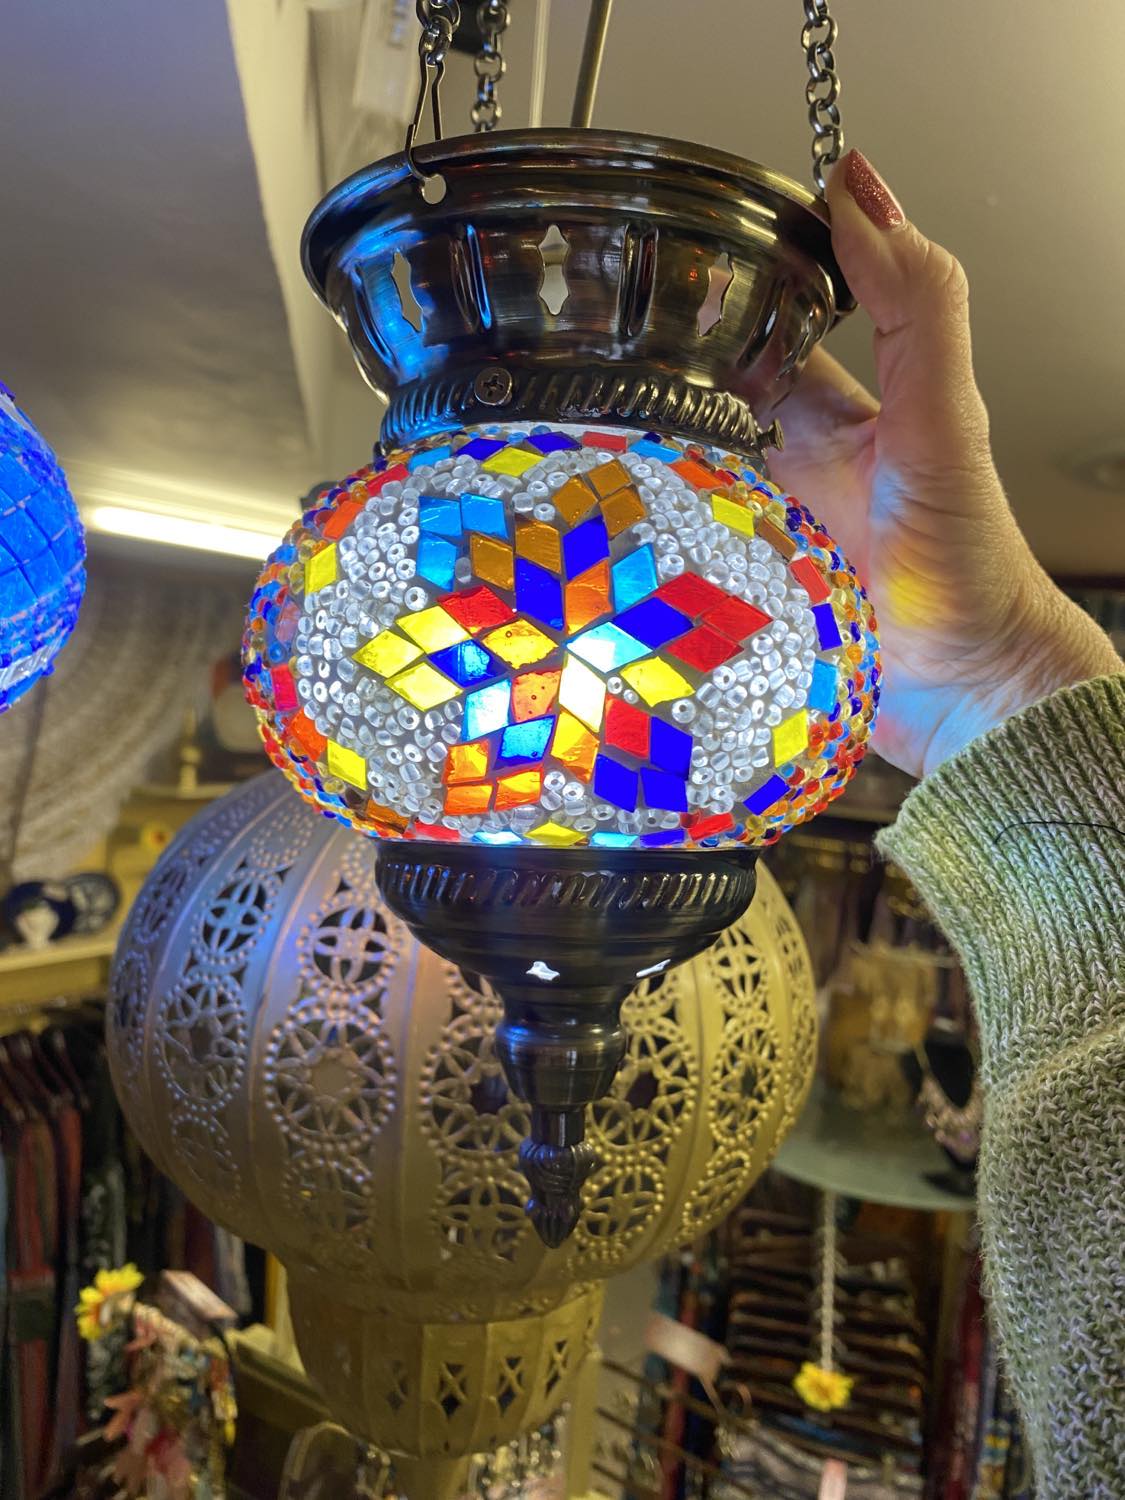 Turkish Mosaic Hanging Lantern Small